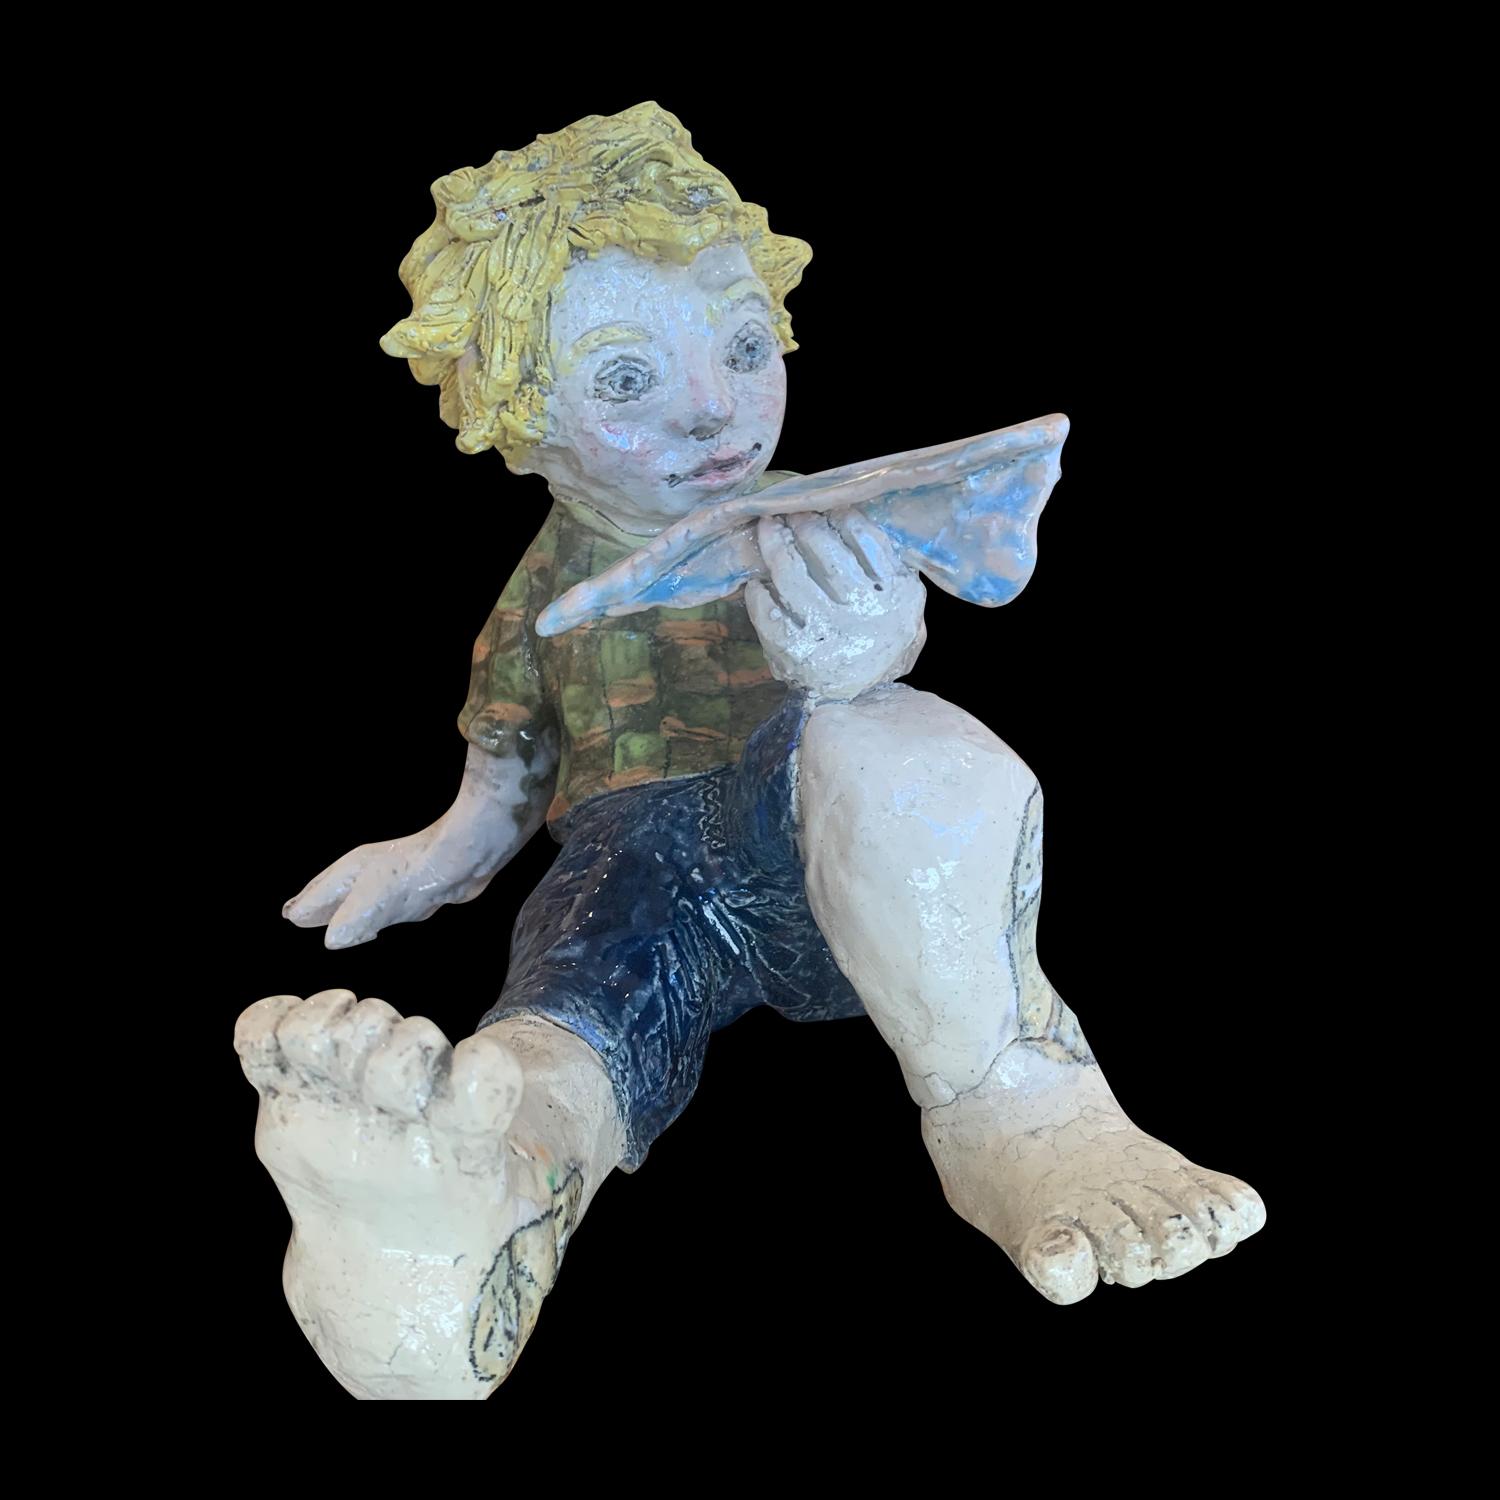 Figurative Sculpture Adi Rom - Jeune garçon et papier - Sculpture en céramique figurative - Art naïf - 1 de 1 par Adi